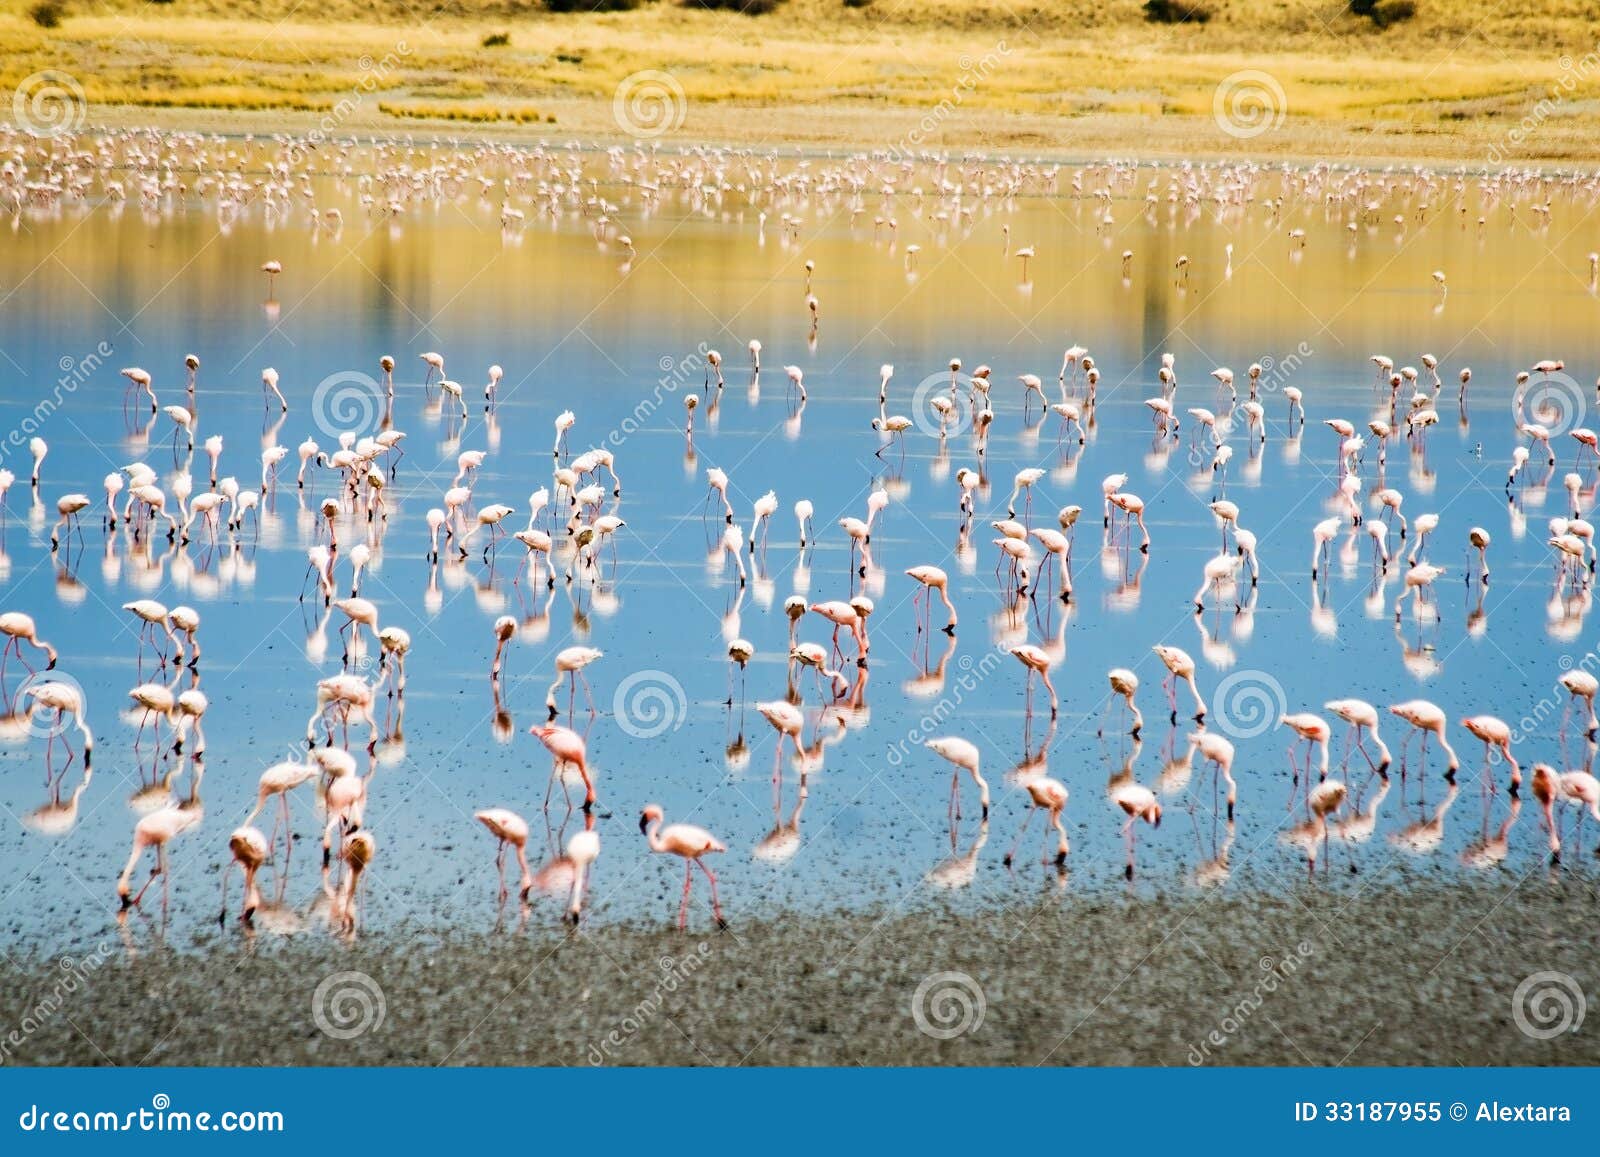 lesser flamingos at lake magadi in the kenyan rift valley